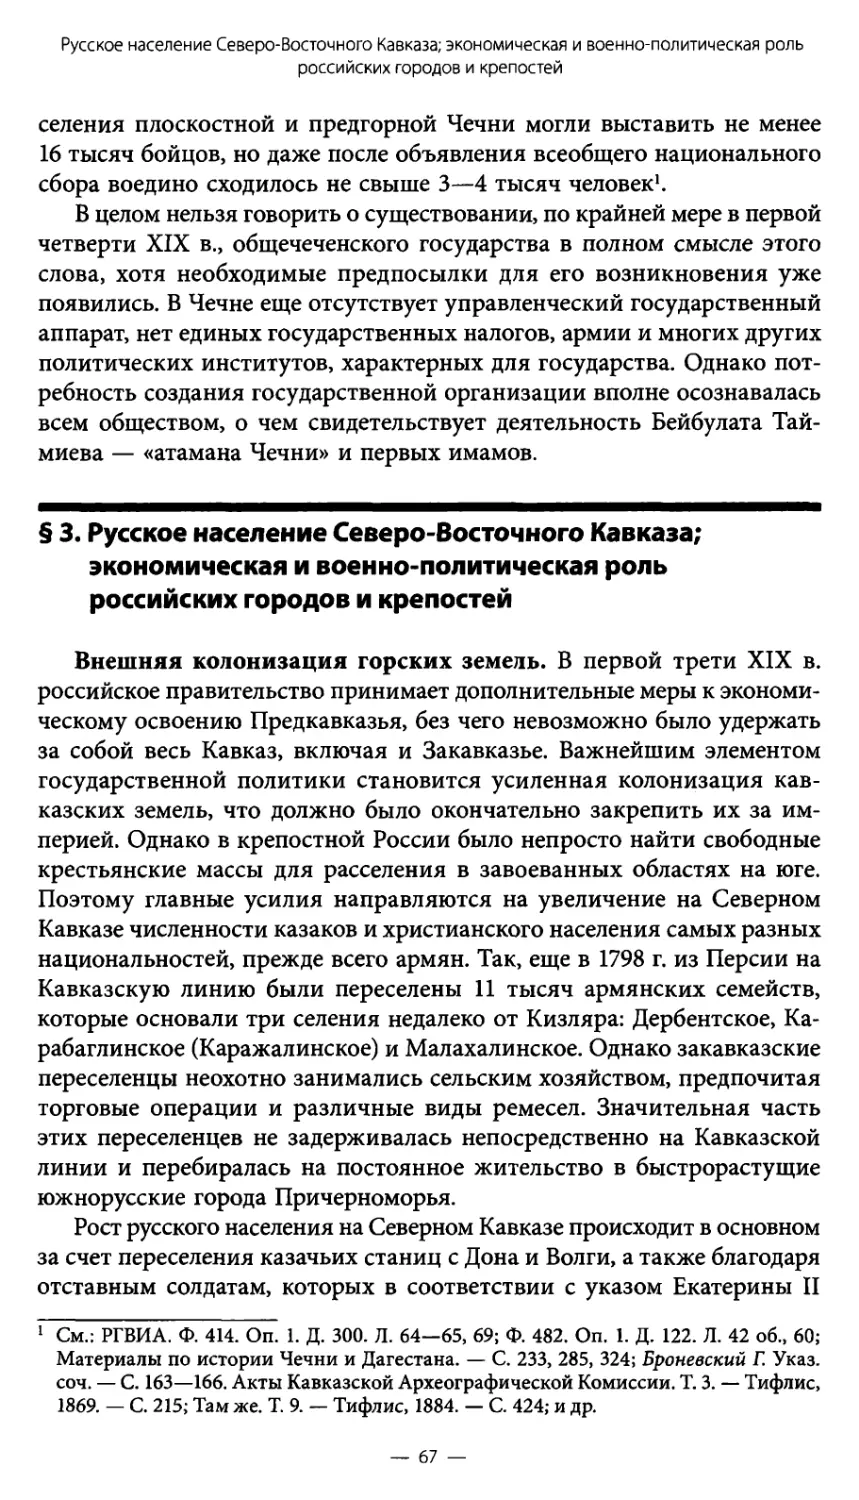 § 3. Русское население Северо-Восточного Кавказа; экономическая и военно-политическая роль российских городов и крепостей